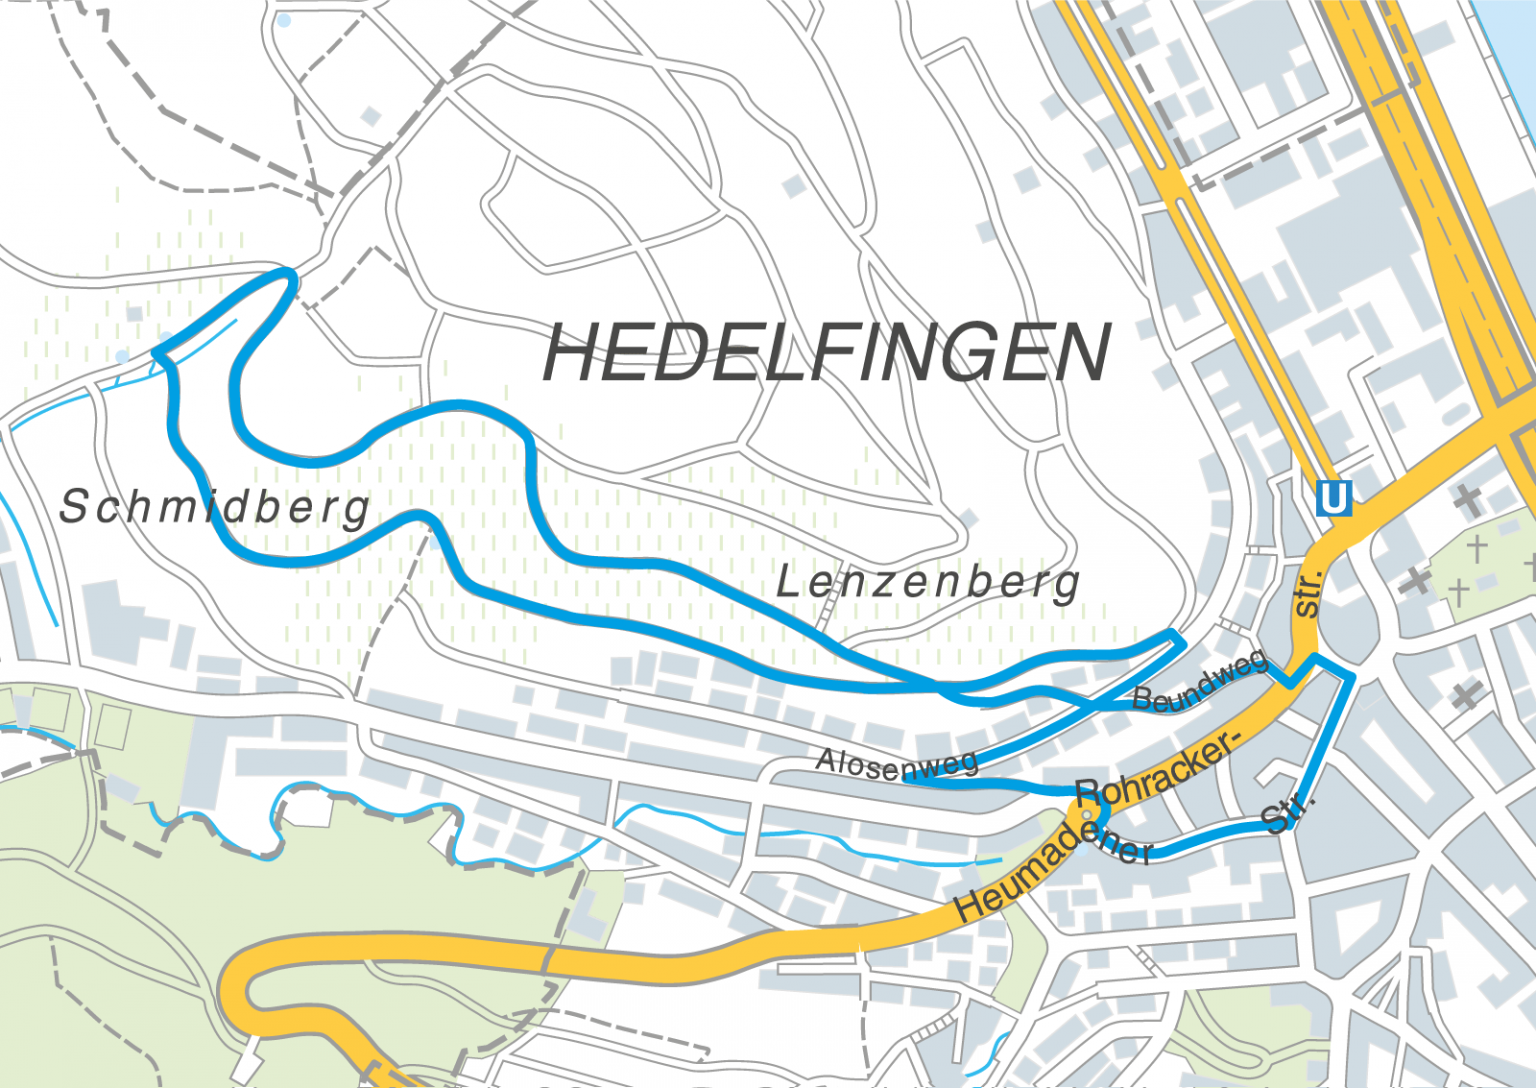 https://xn--s-luft-dua.de/wp-content/uploads/2020/05/Route_Hedelfingen_Weinbergweg-1536x1088.png